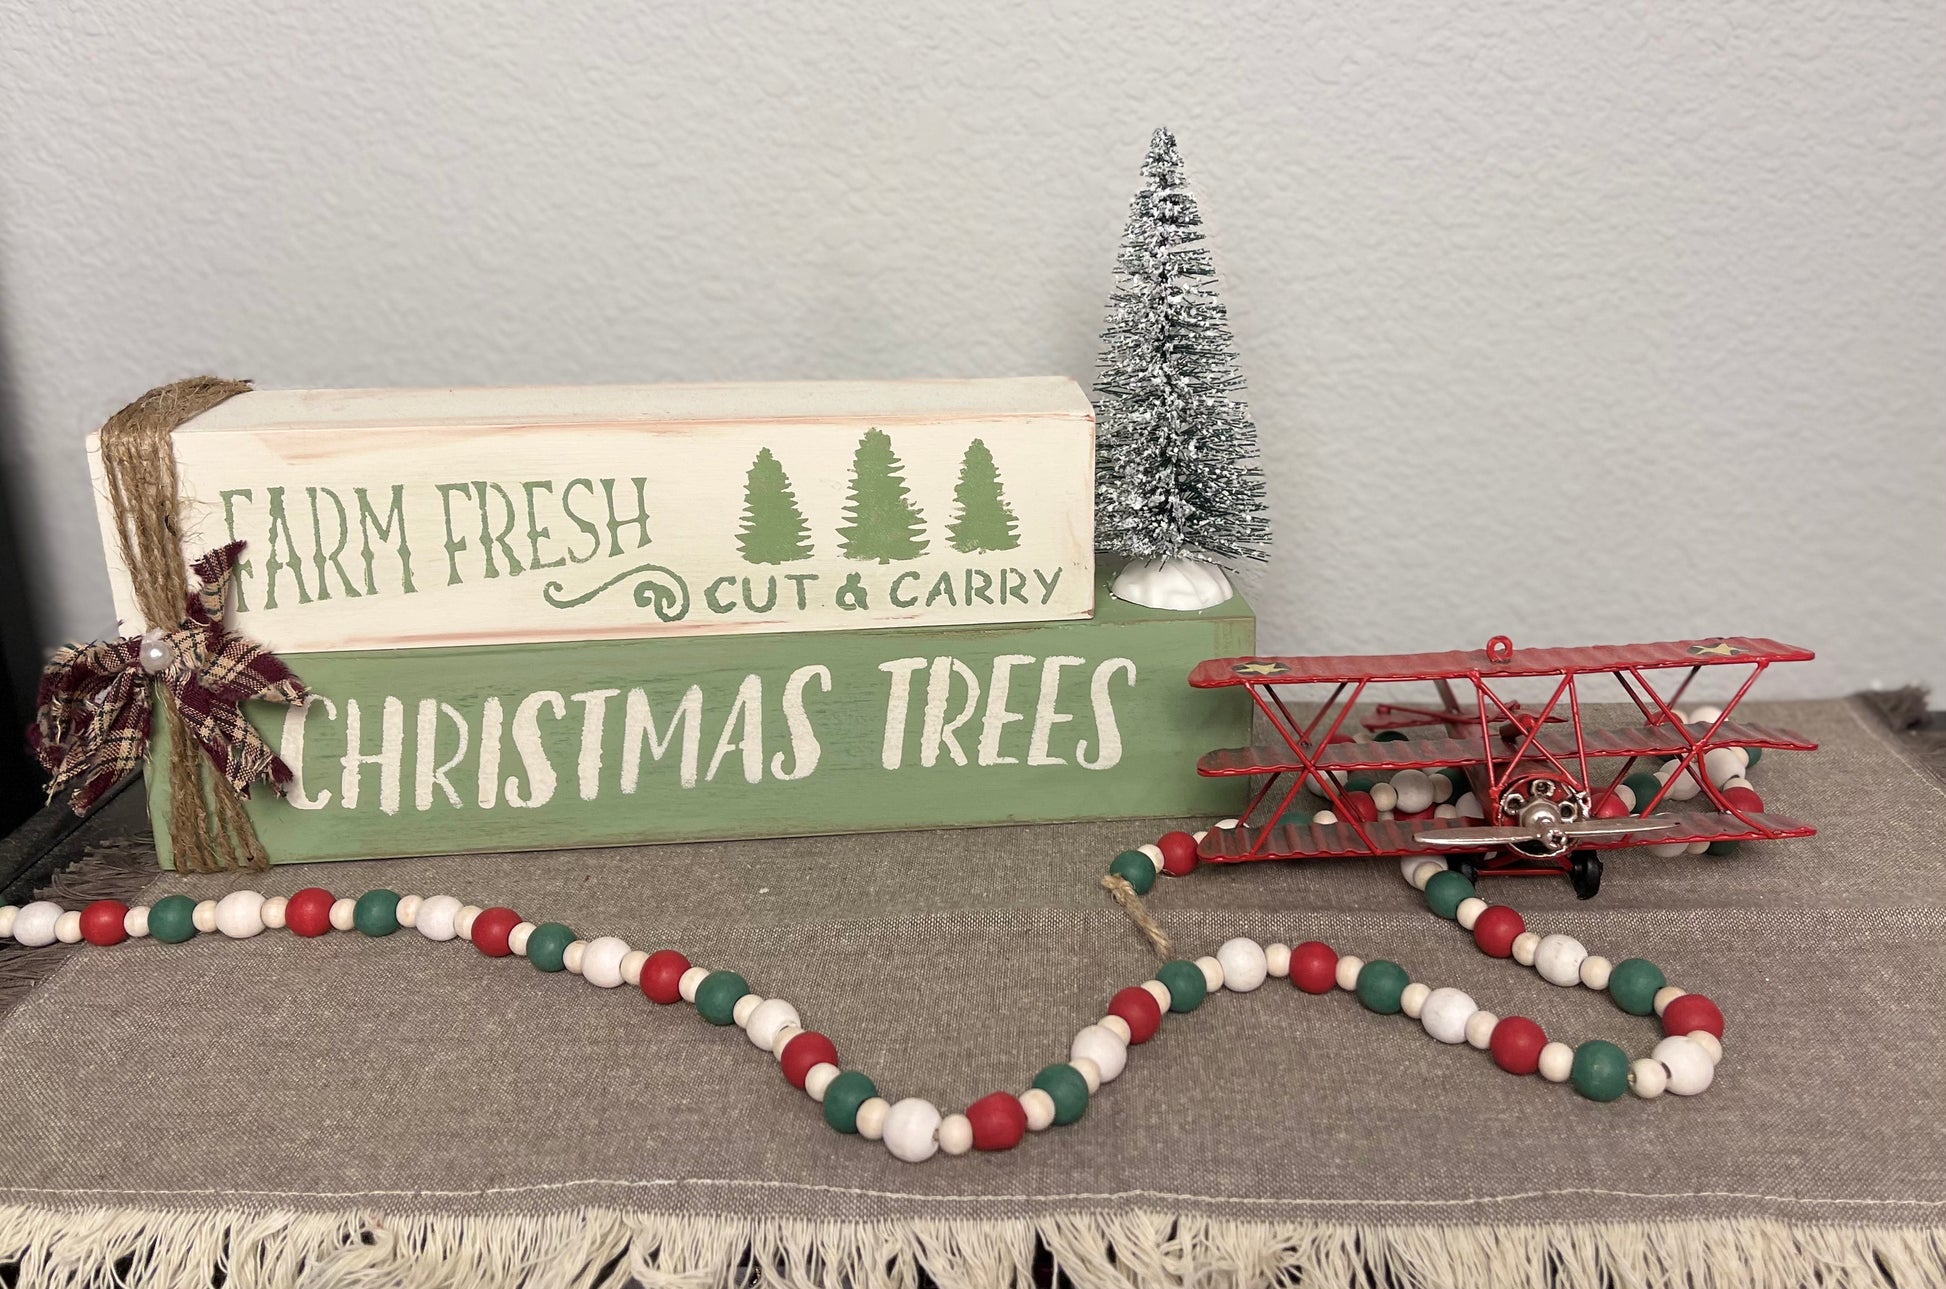 Farm fresh Christmas trees - Heart Land Designs